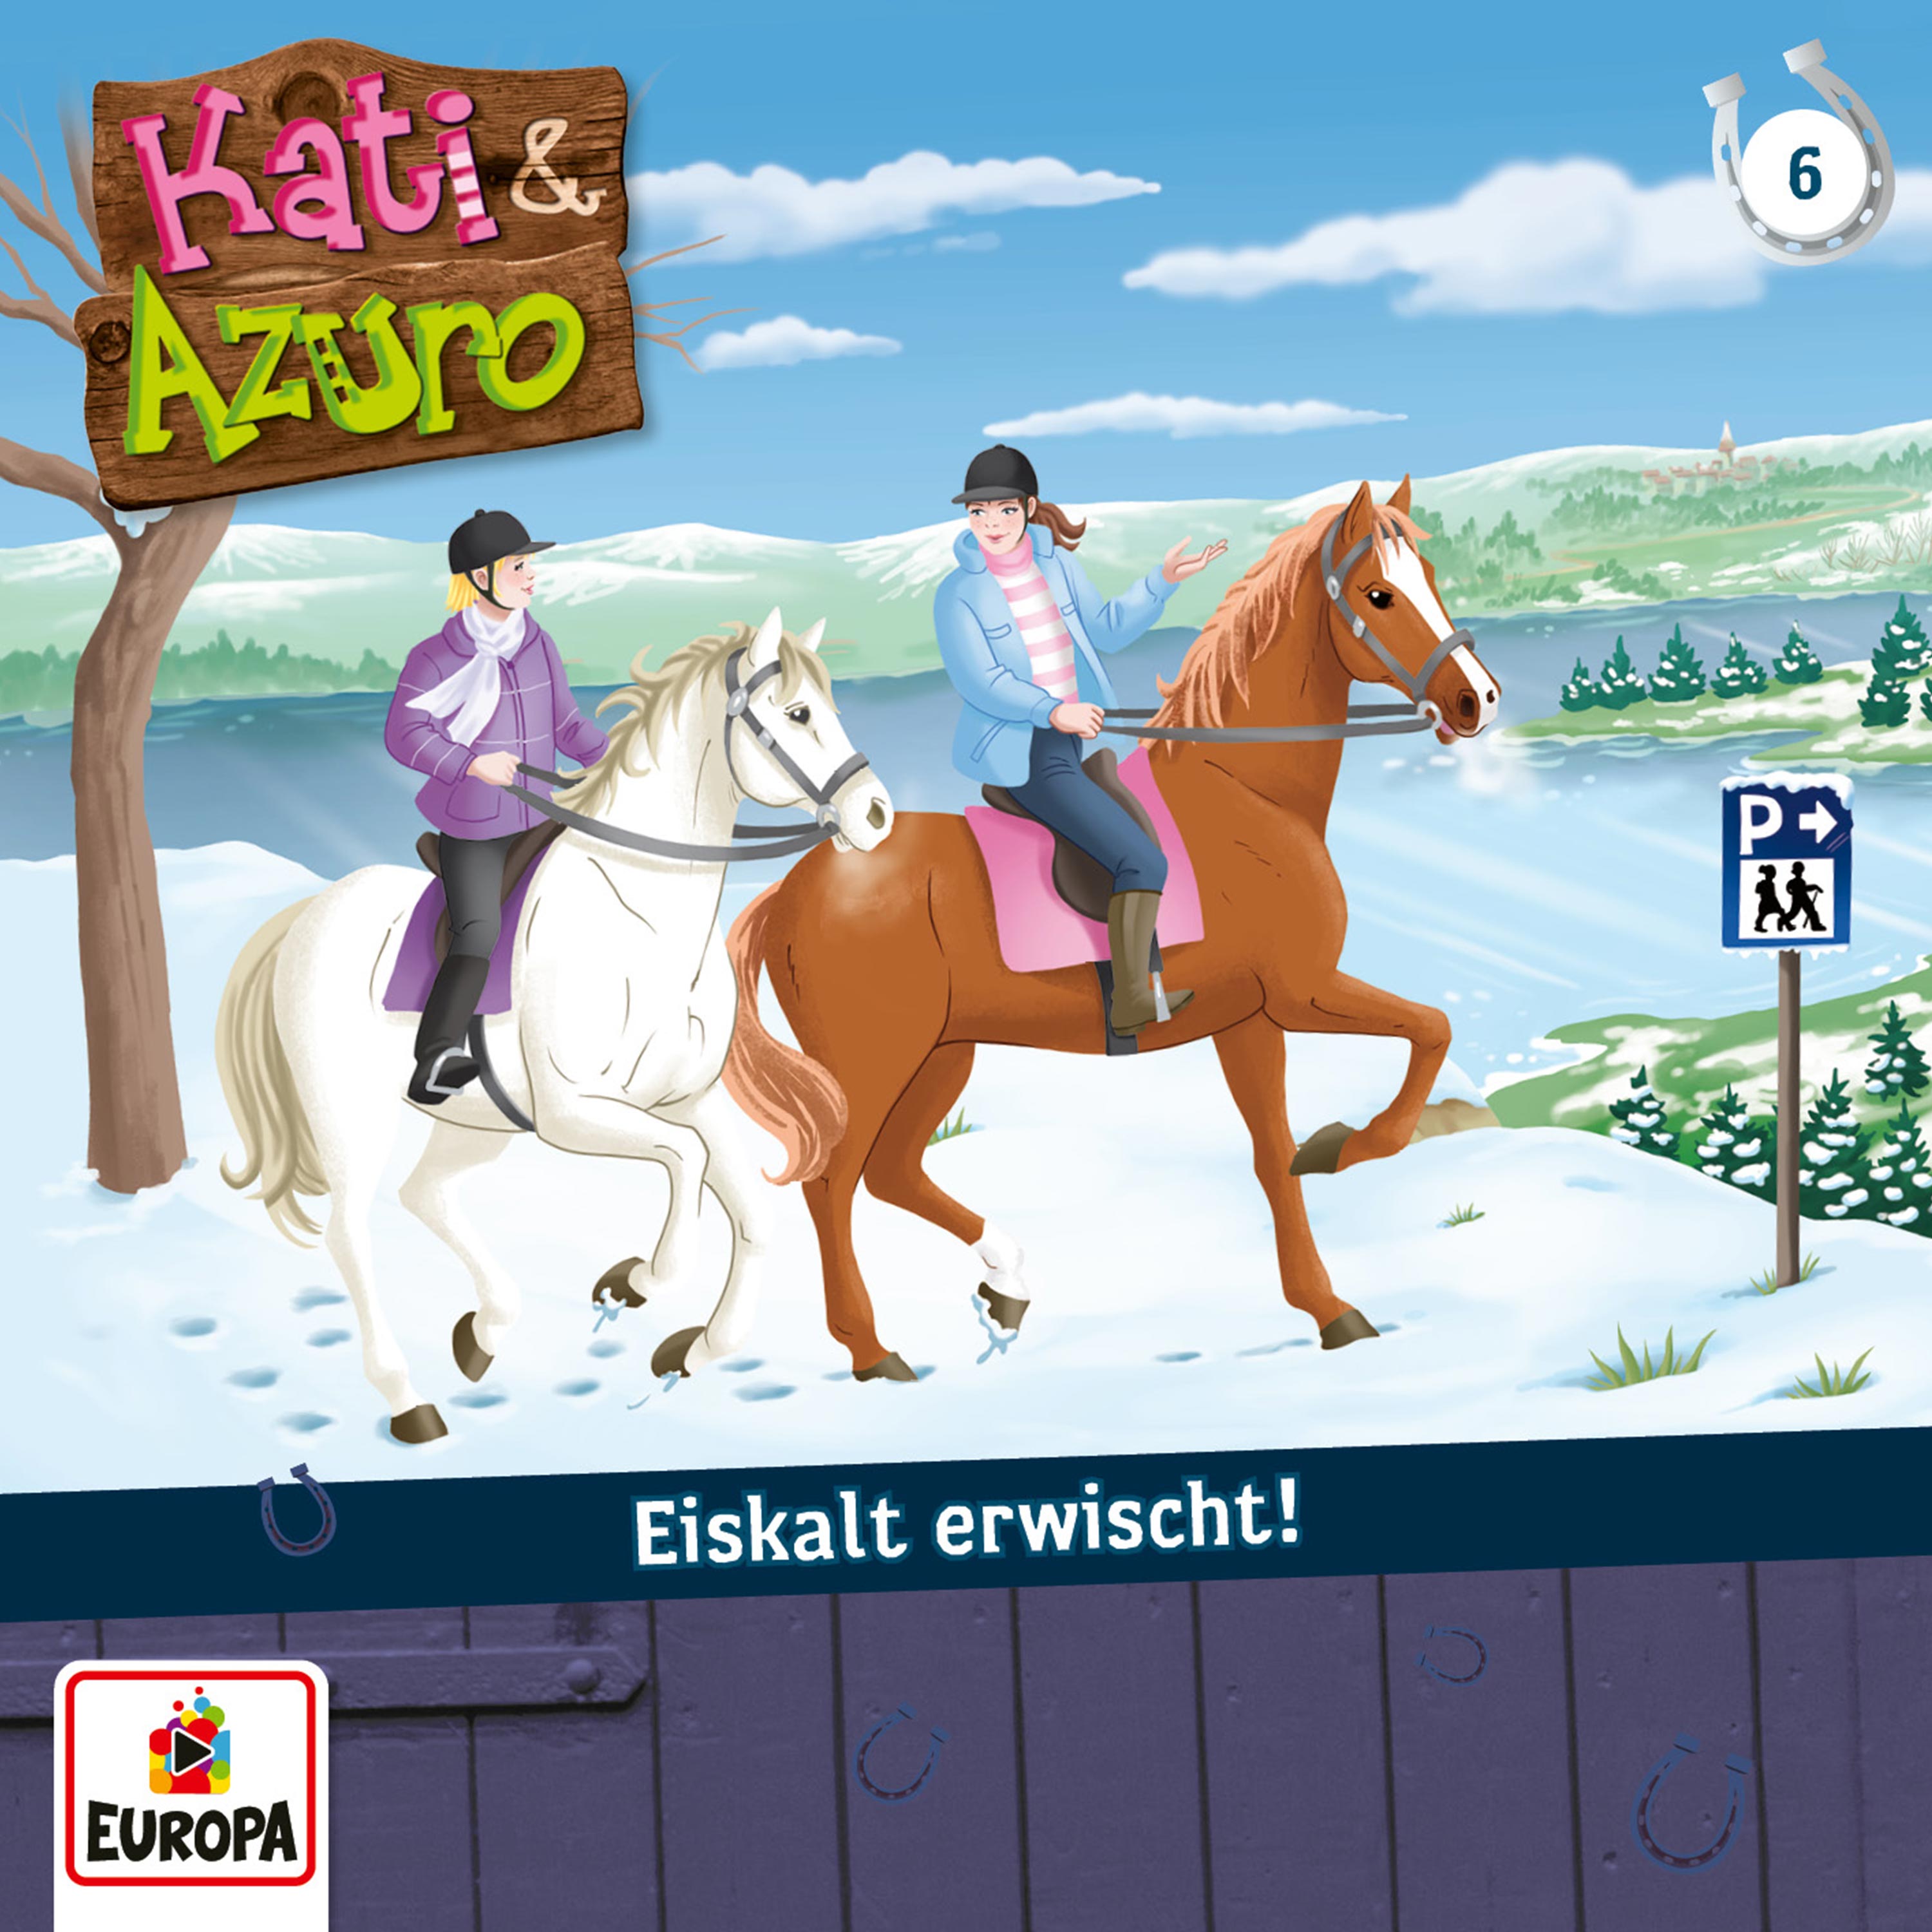 Kati & Azuro - Eiskalt erwischt!